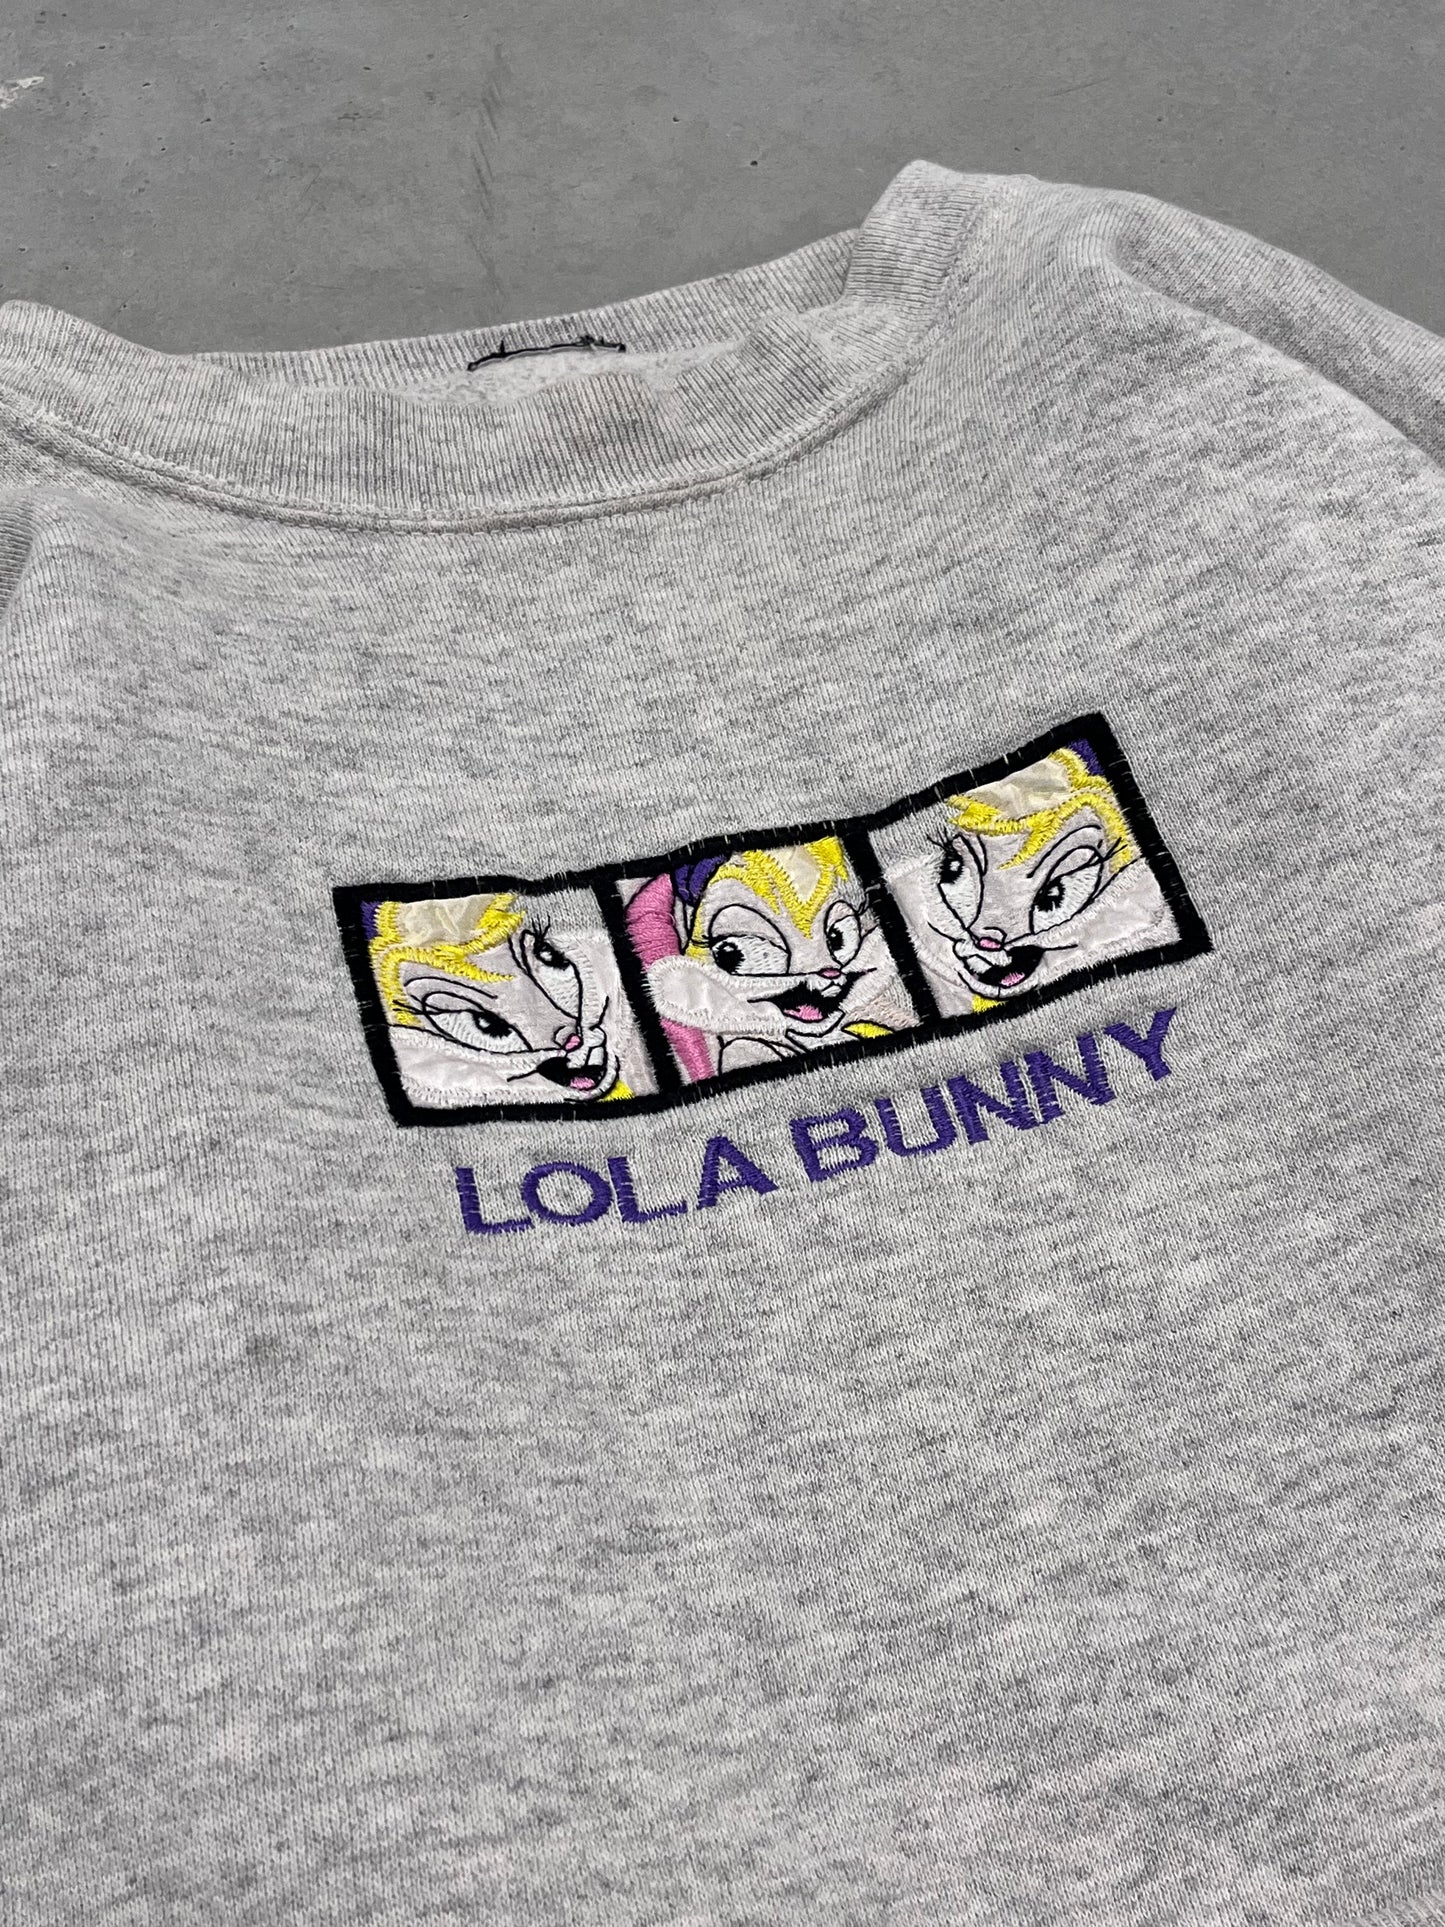 Vintage Looney Tunes Lola Bunny Cropped Sweatshirt